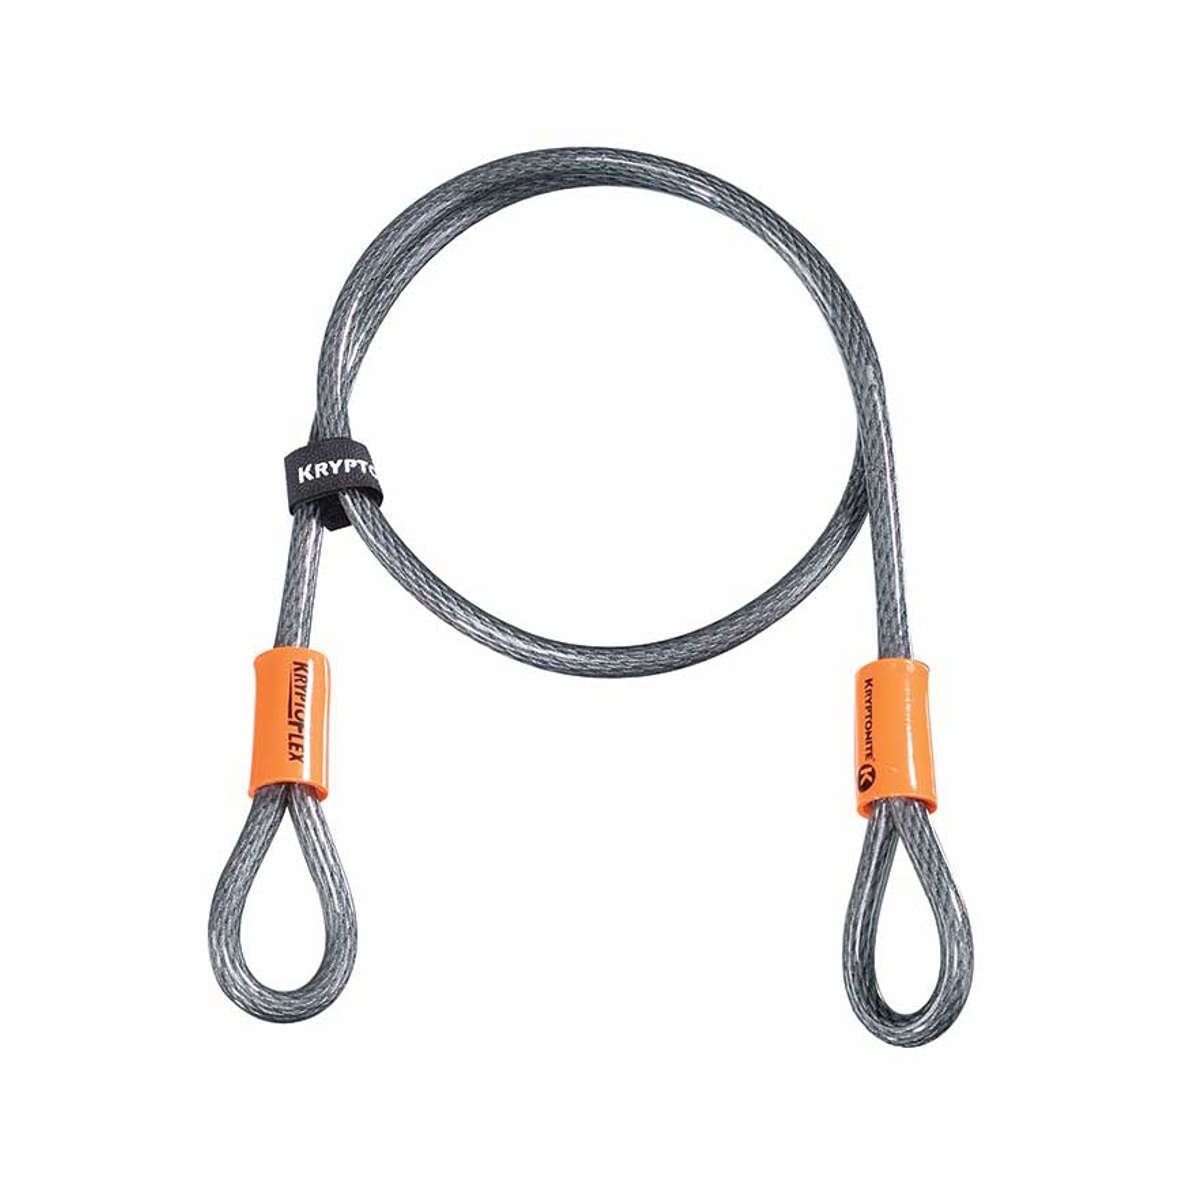 Kryptonite Cable for Cable Lock Kryoptoflex 410 Steel - Grey, 120 cm